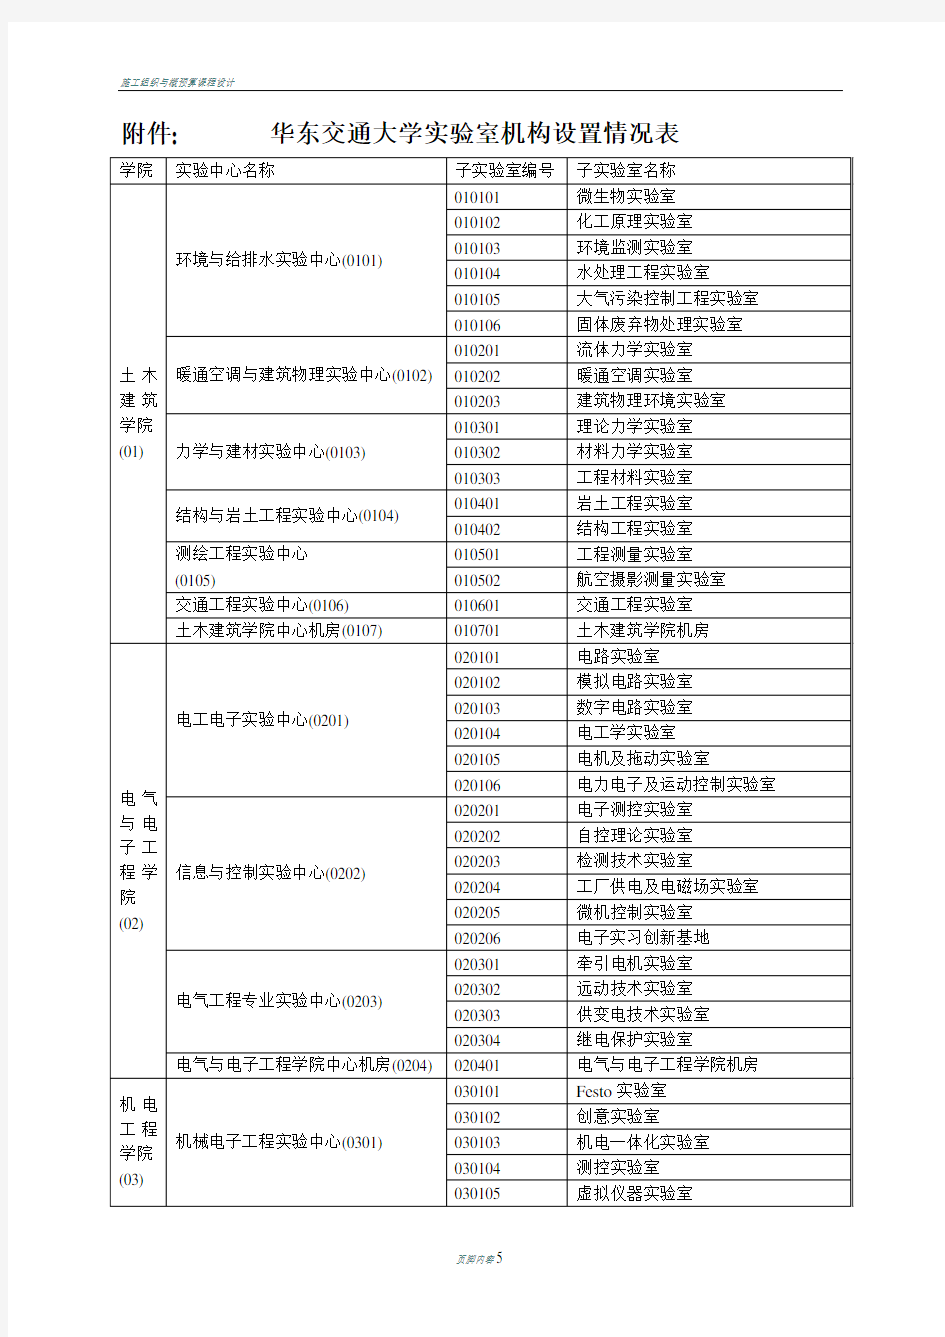 华东交通大学实验室机构设置情况表